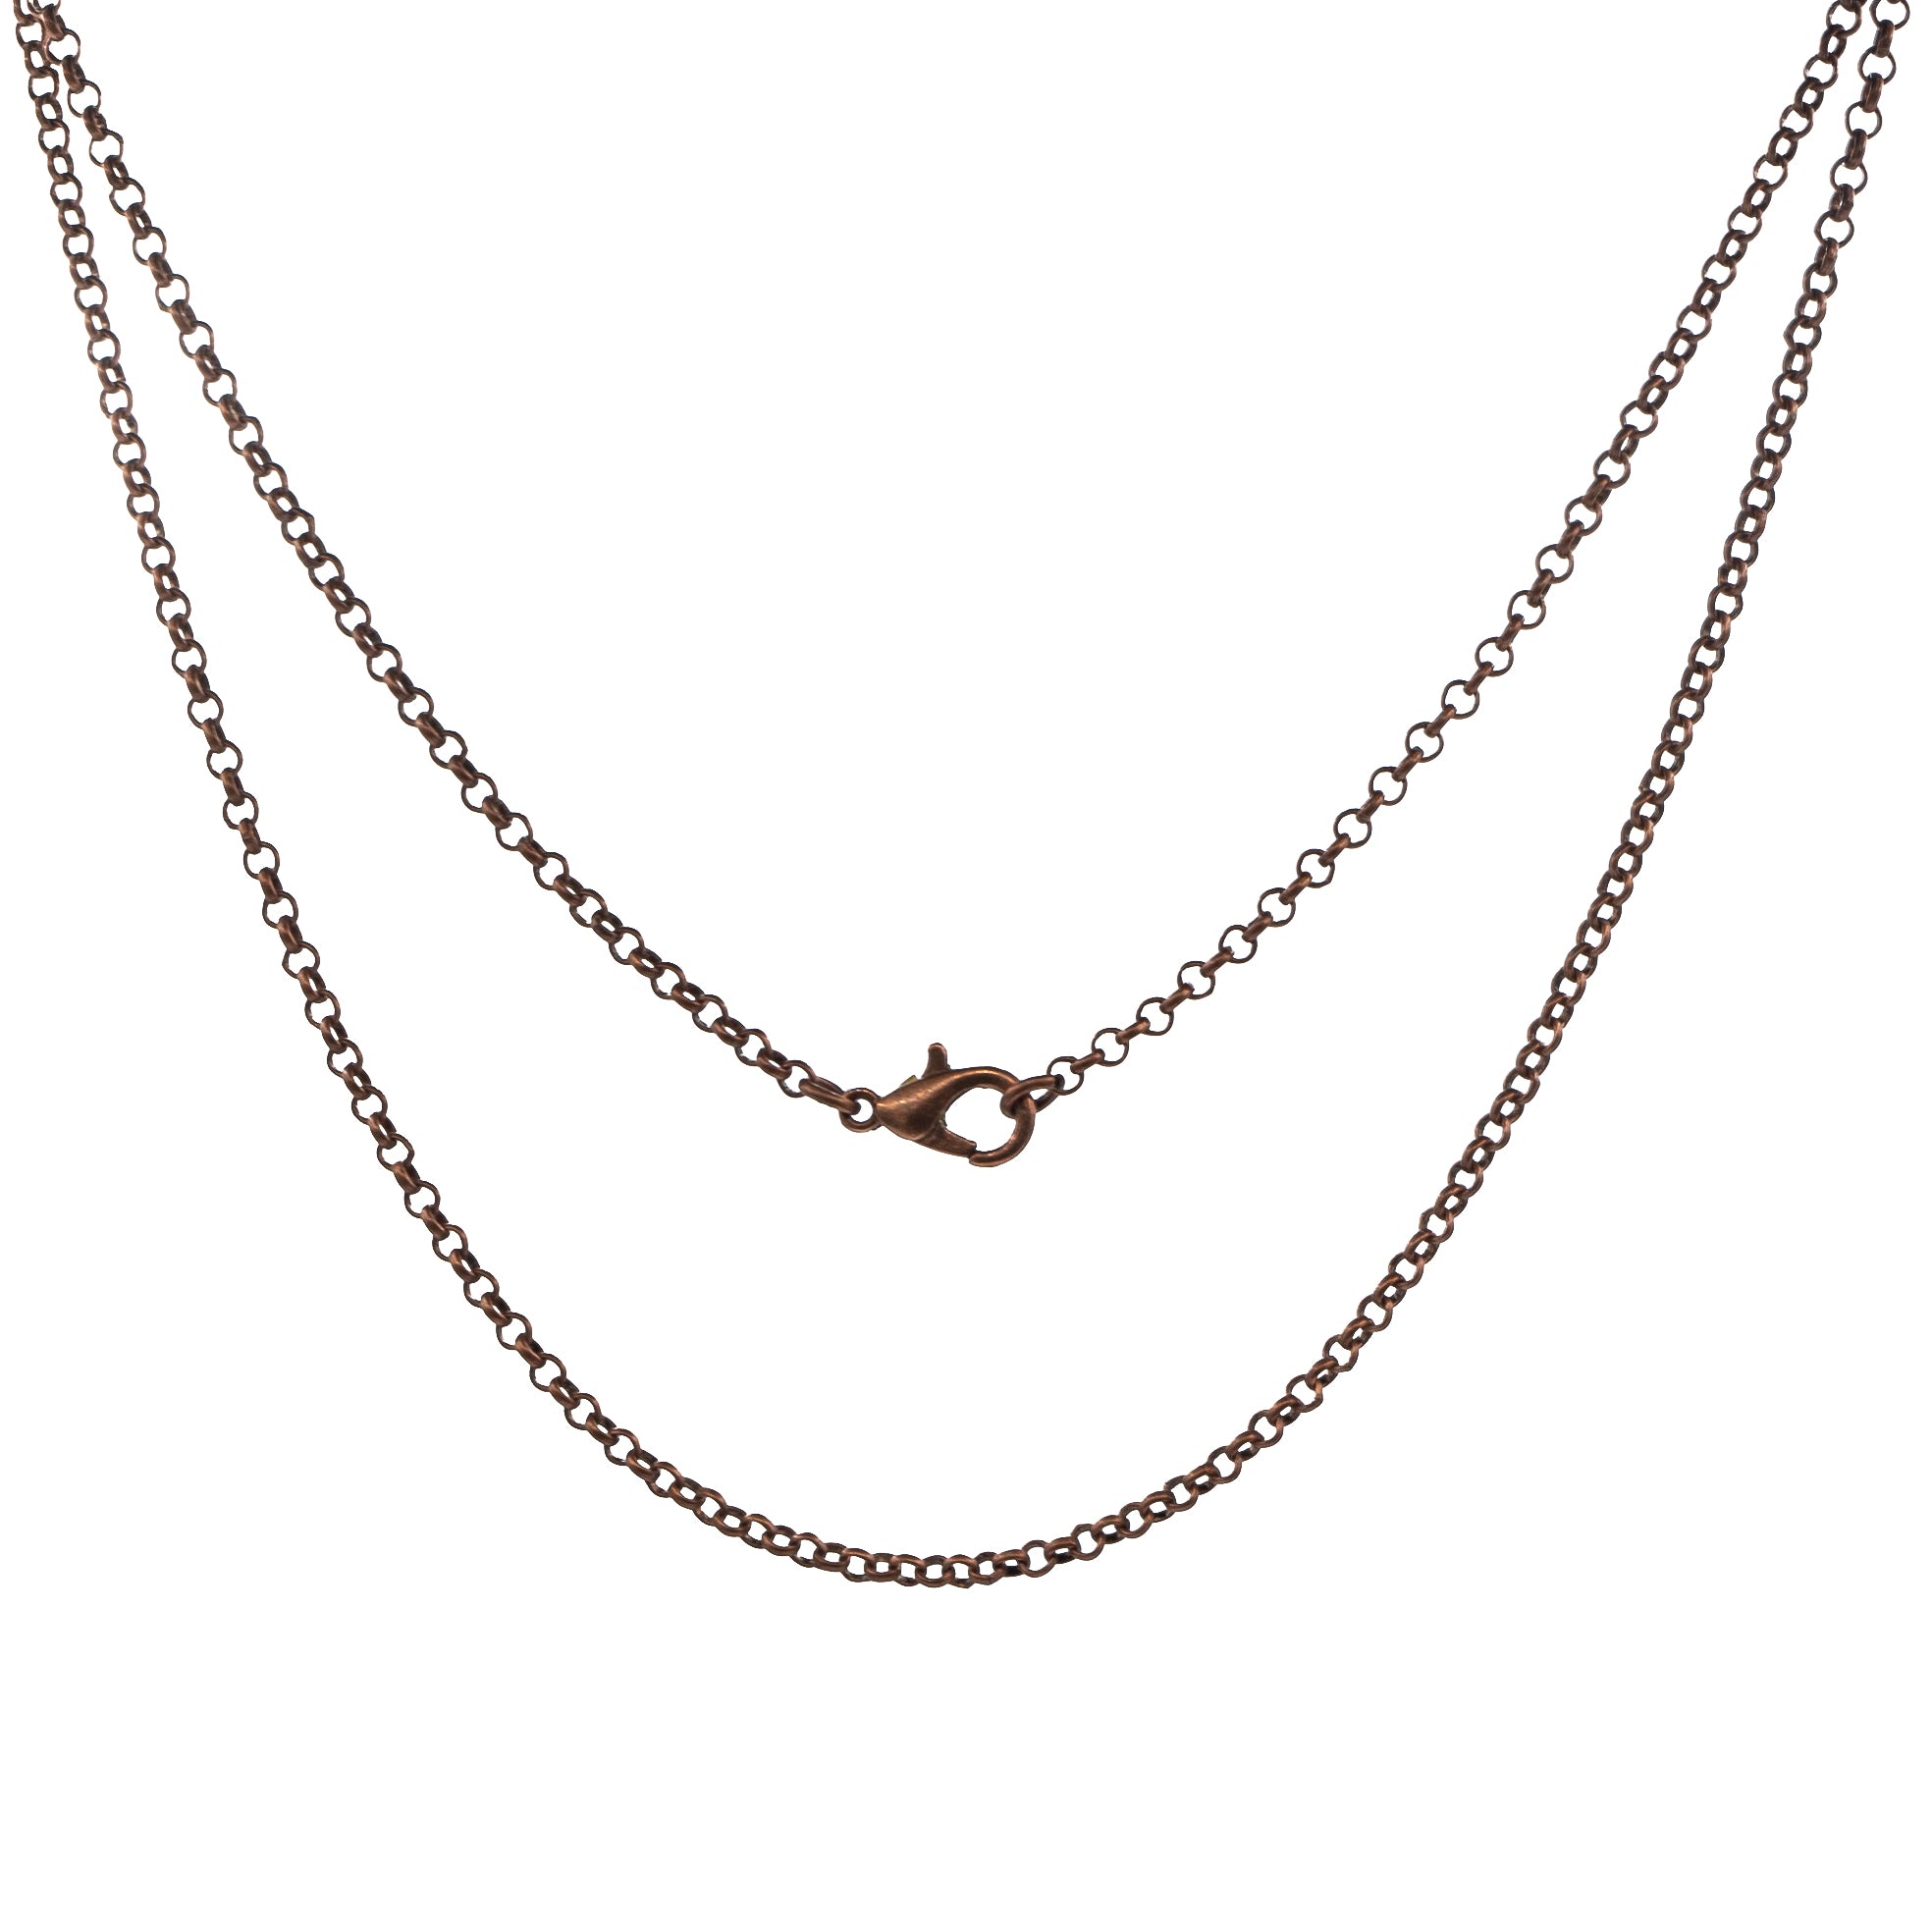 Chain - Copper 24" $8